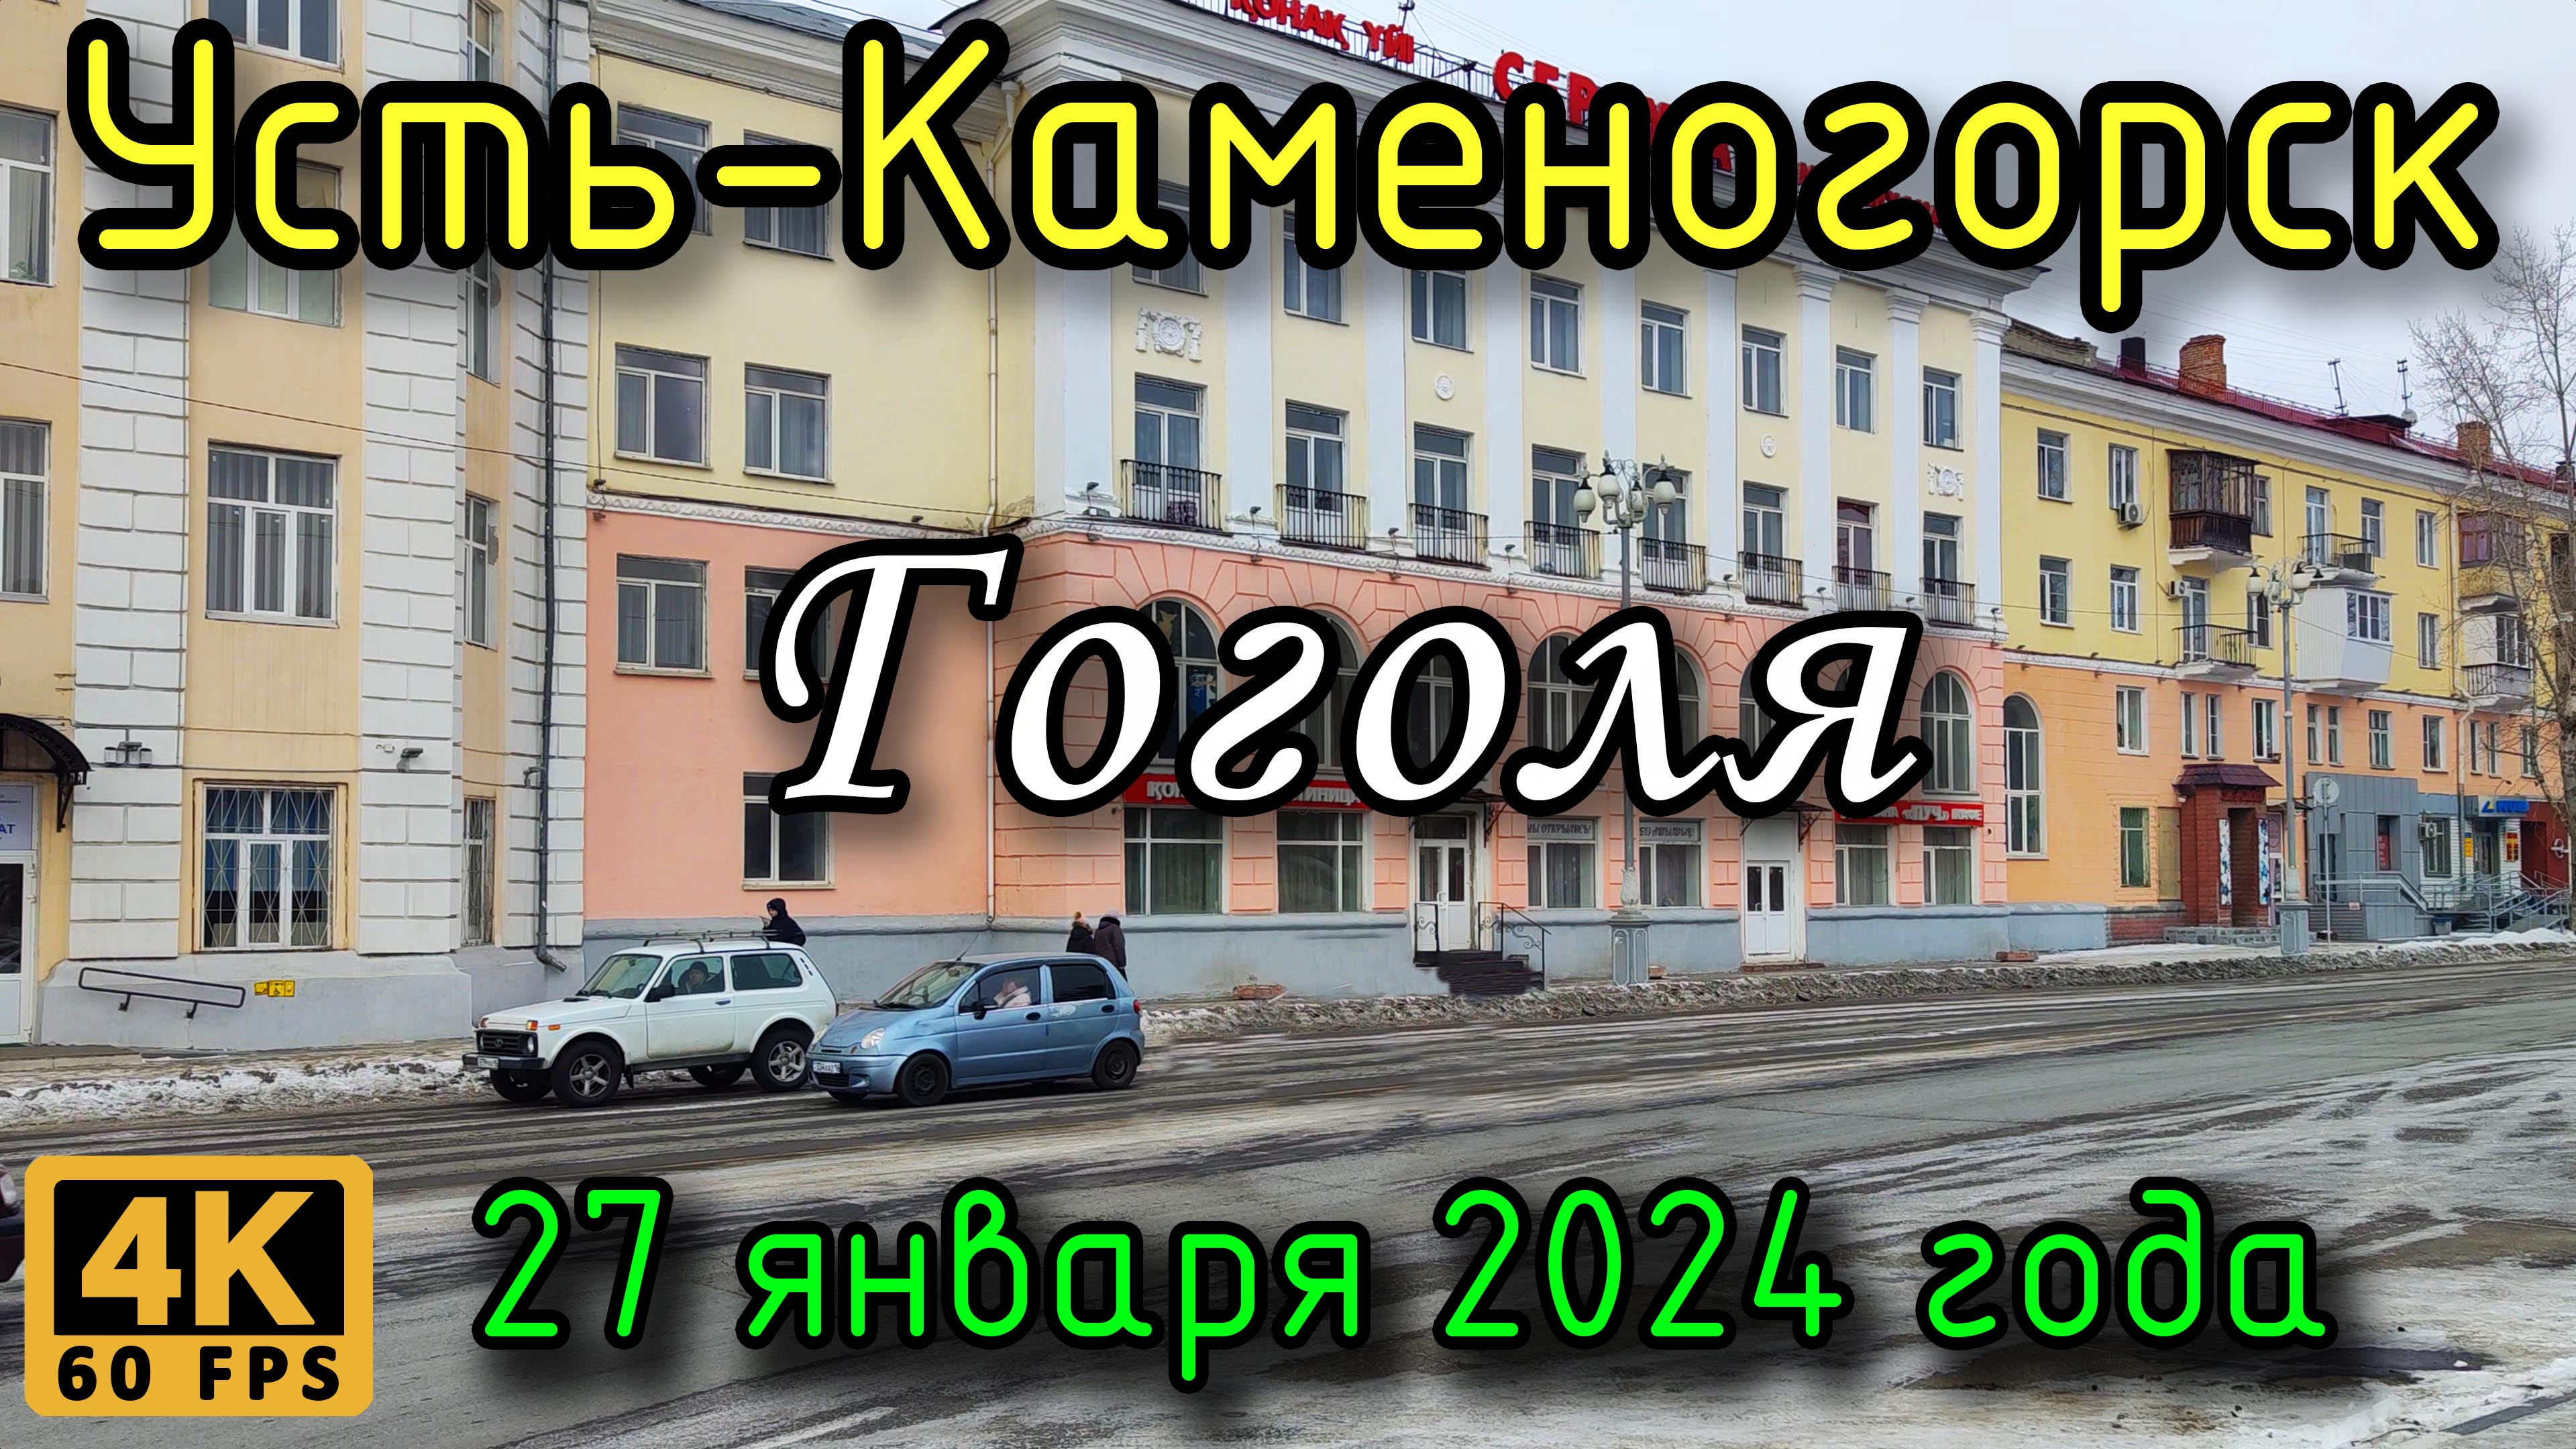 Усть-Каменогорск: ул. Гоголя в 4К, 27 января 2024 года.